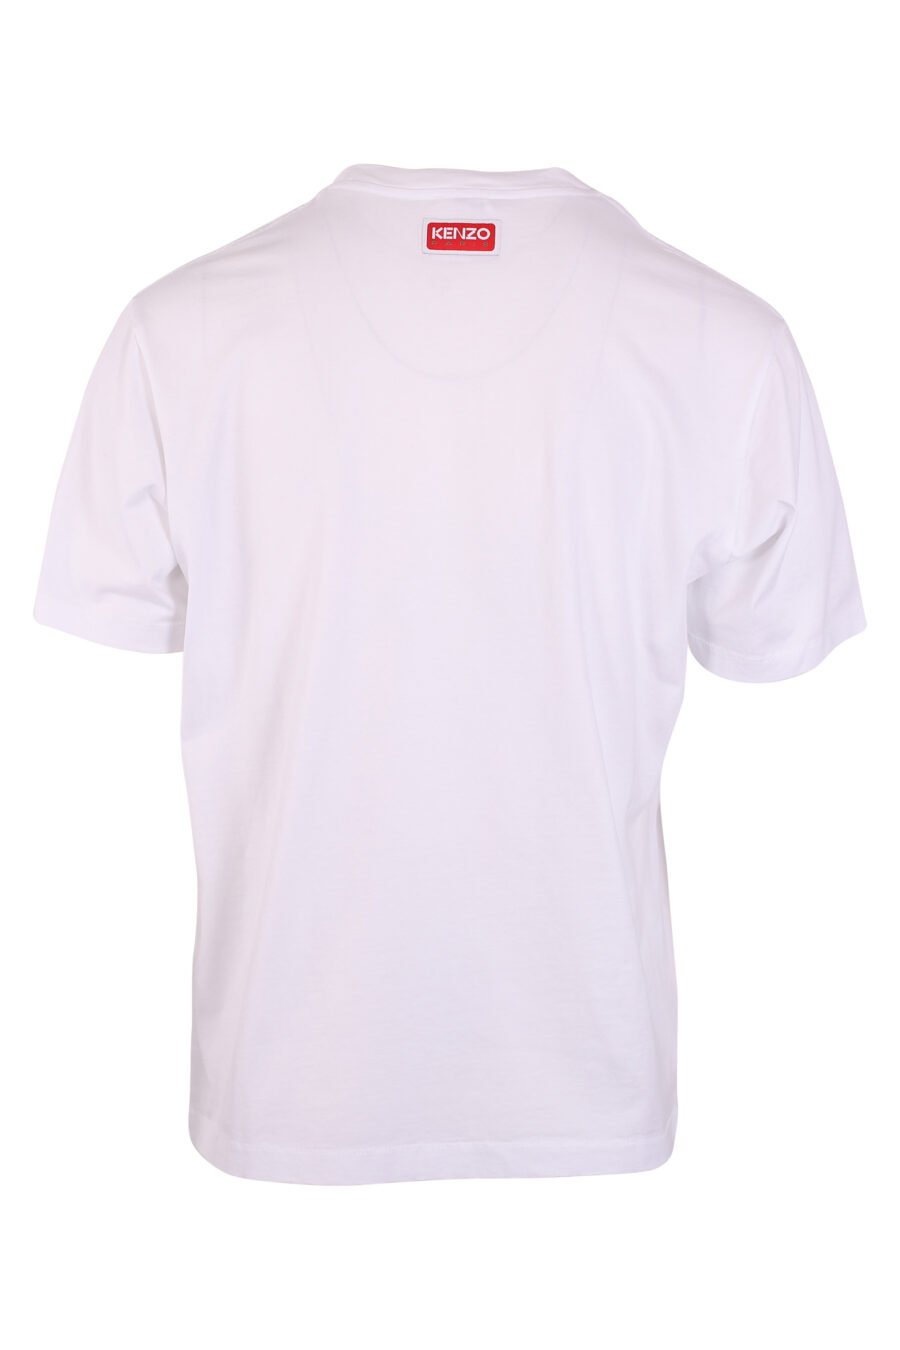 T-shirt blanc avec logo "flower" - IMG 9468